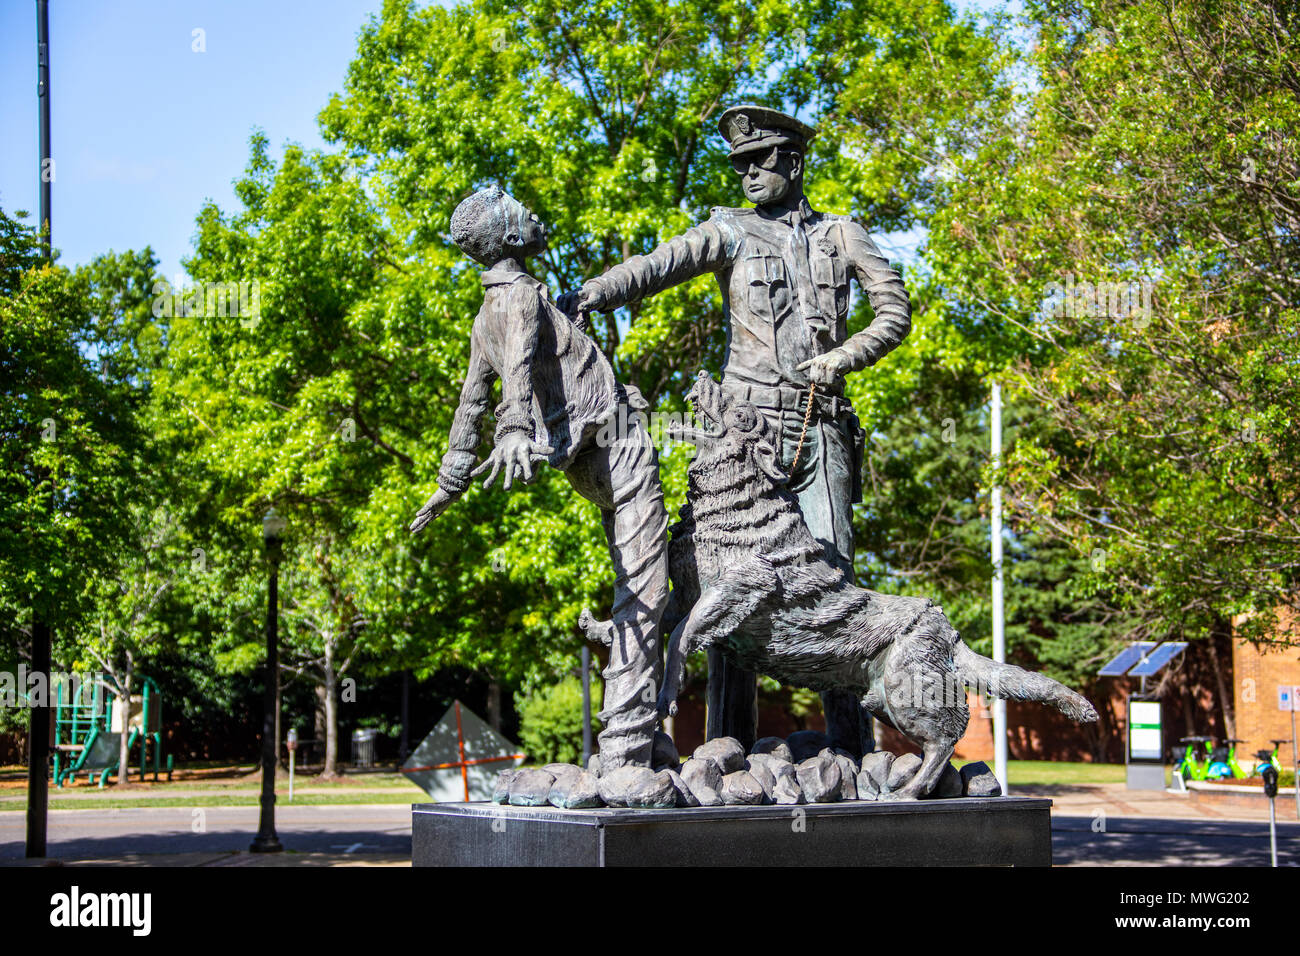 Le fantassin, statue sculptée par Ronald S McDowell, Kelly Ingram Park, Birmingham, Alabama, USA Banque D'Images